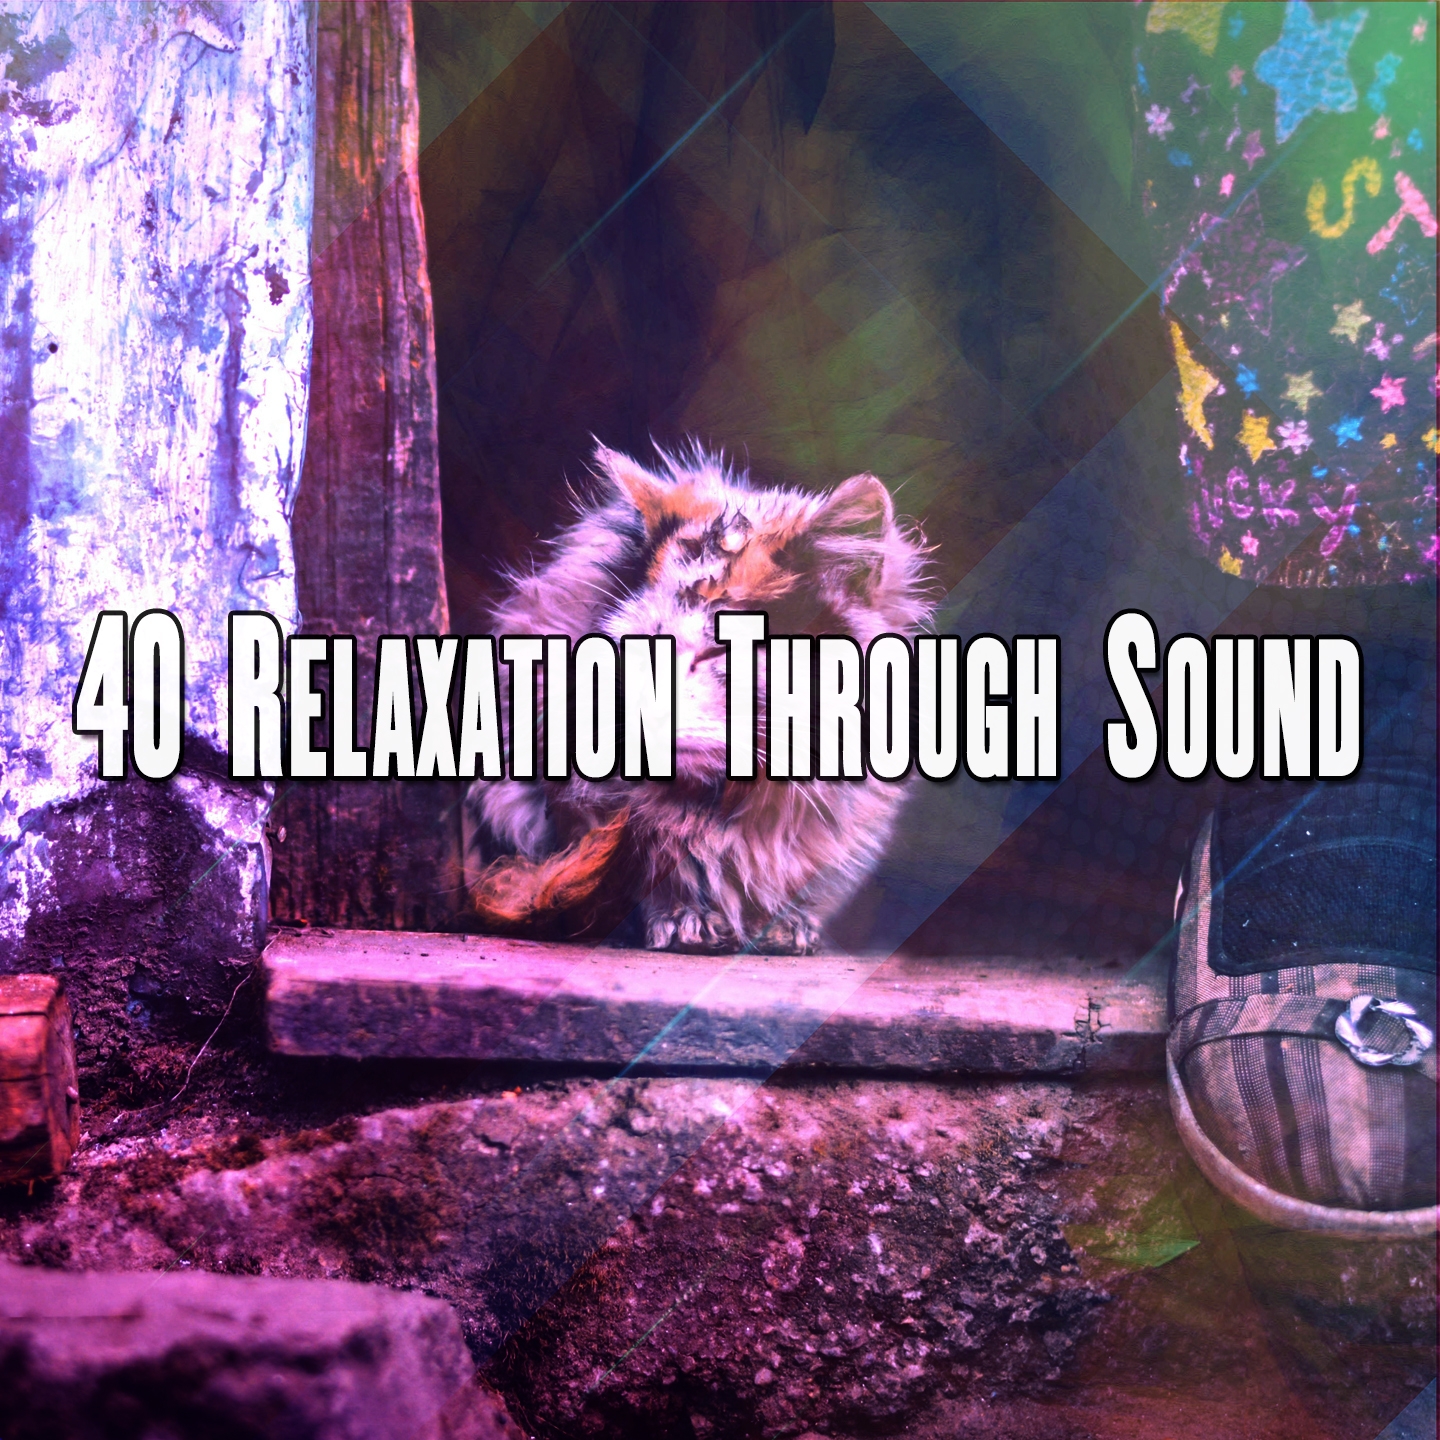 40 Relaxation Through Sound